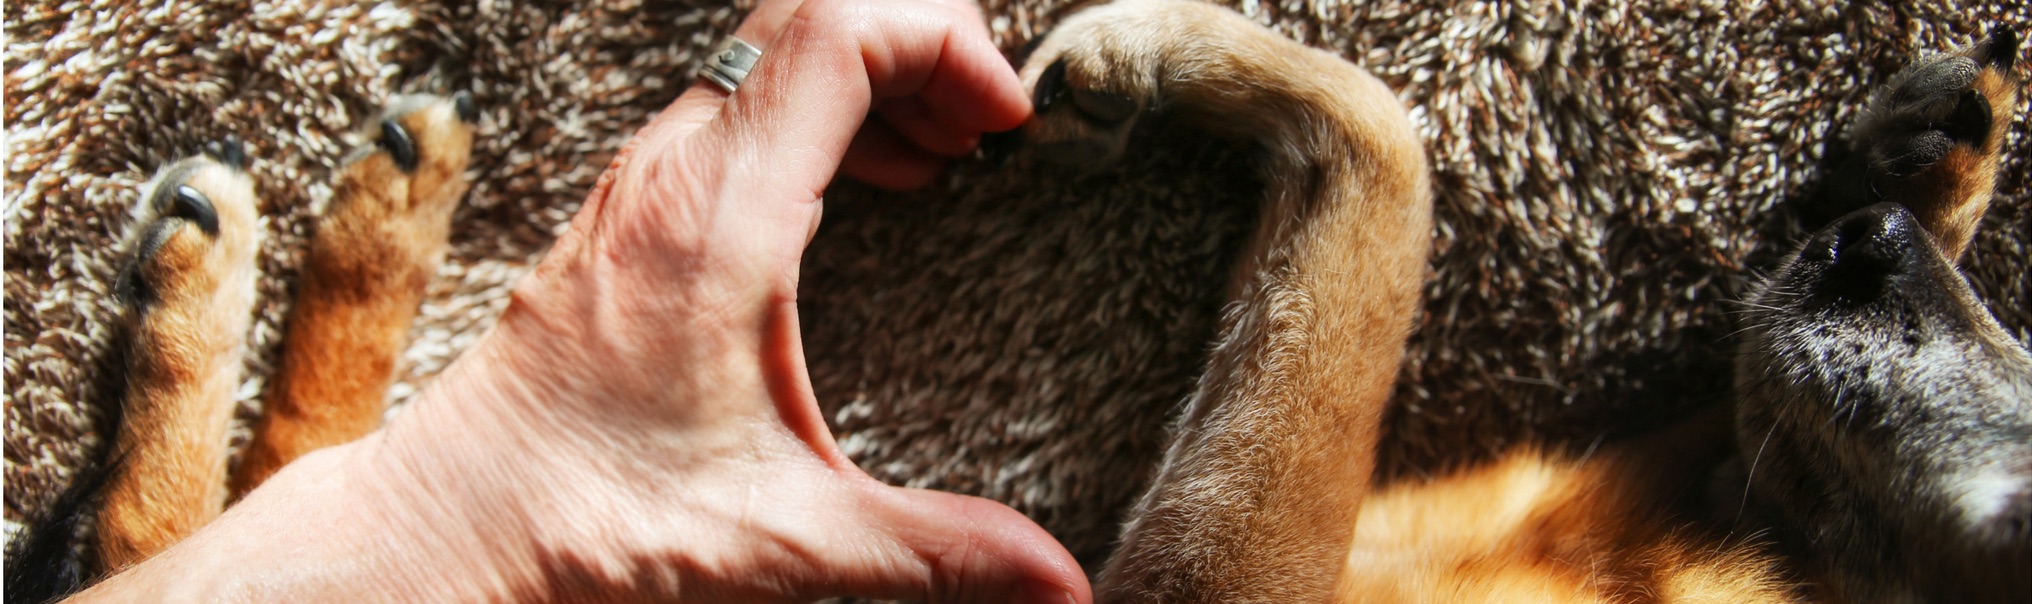 Dog Euthanasia 4 Paws 24 Hour